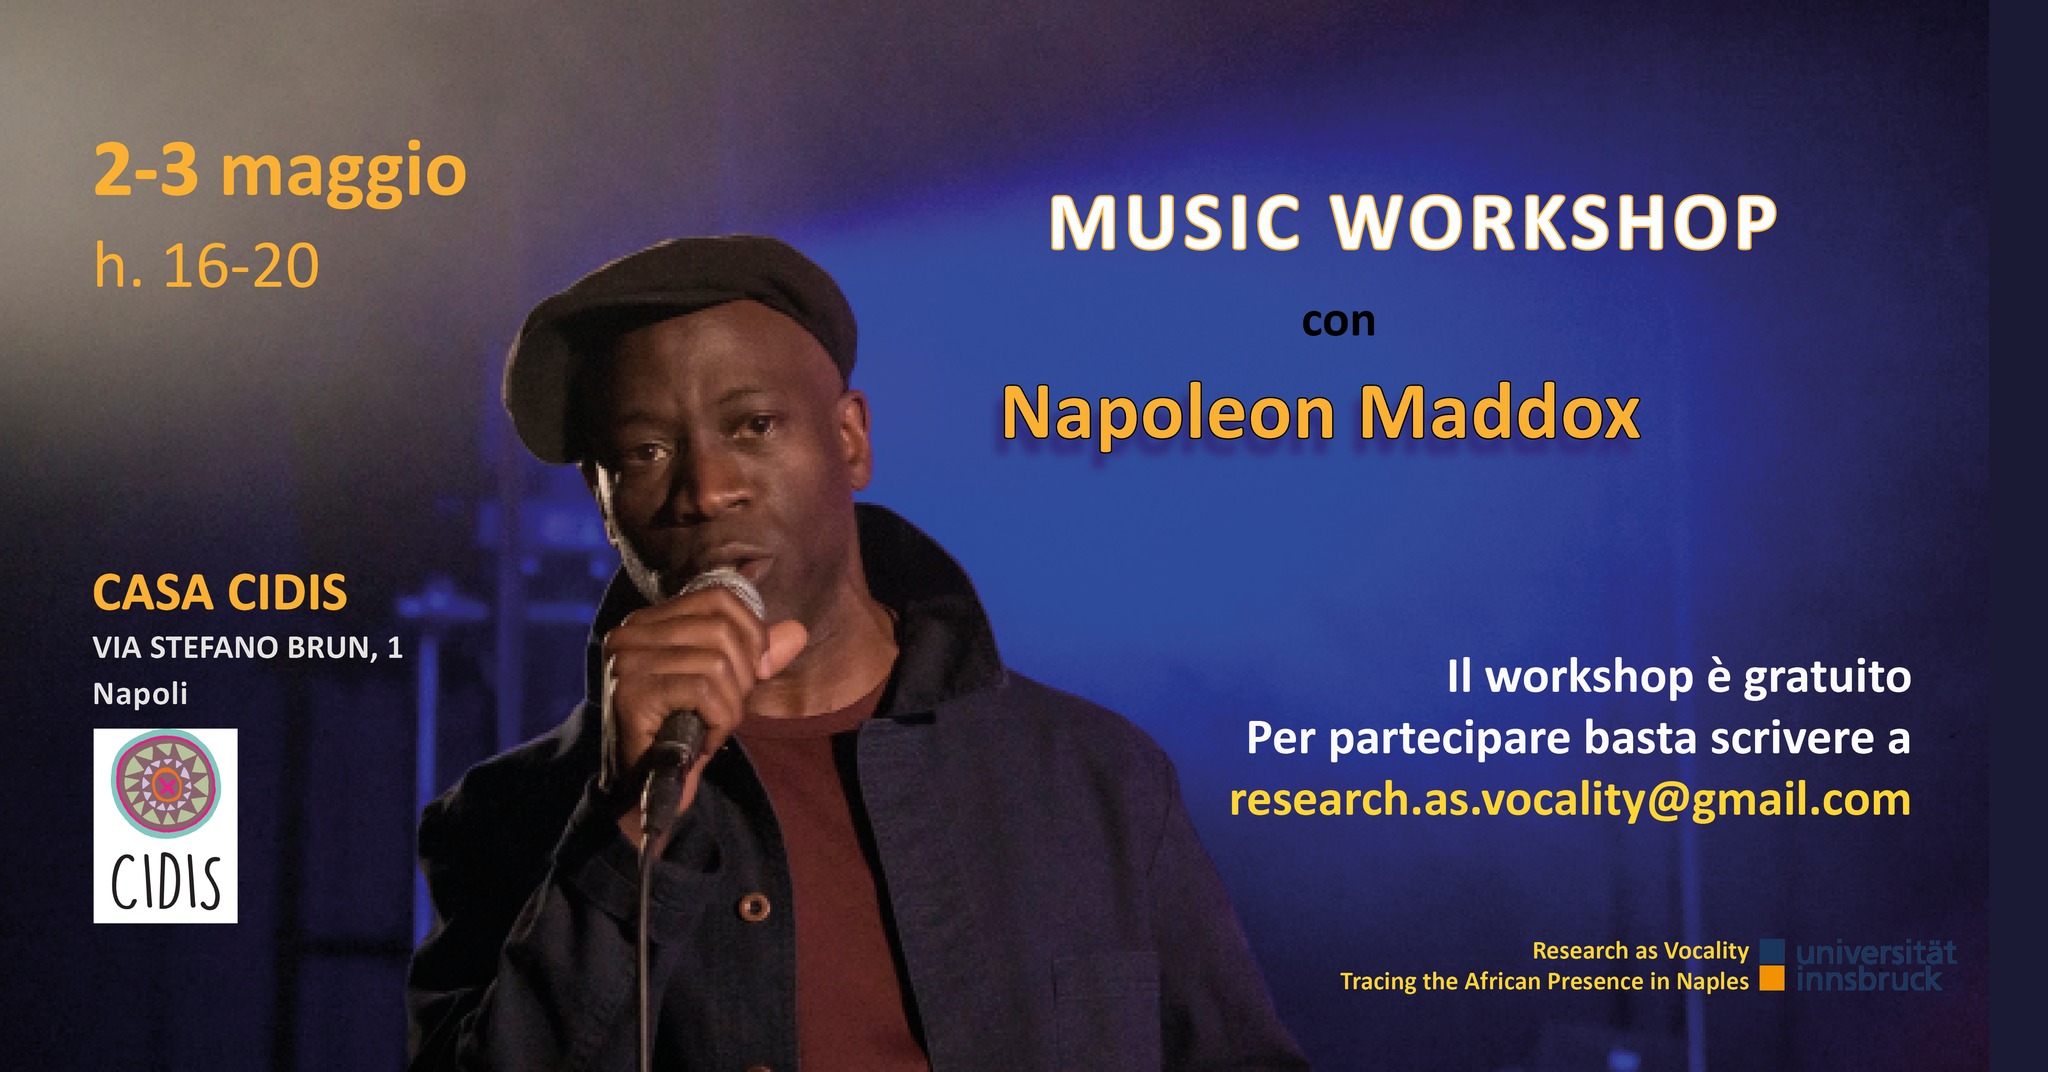 Music Workshop gratuito con Napoleon Maddox a Casa Cidis